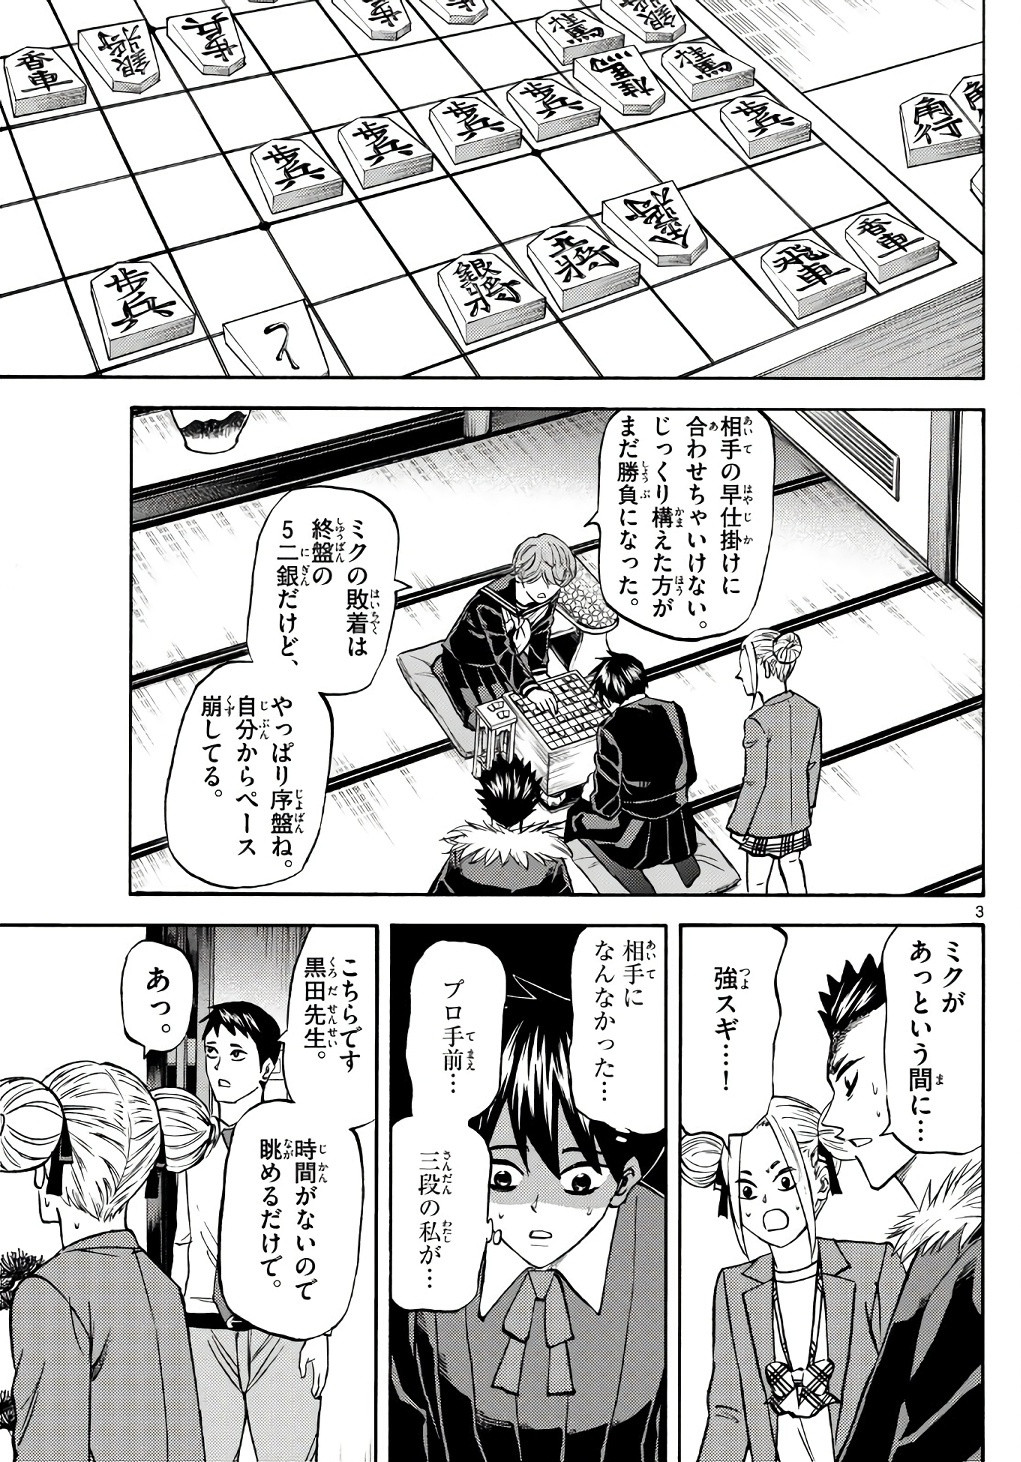 Ryu-to-Ichigo - Chapter 184 - Page 3